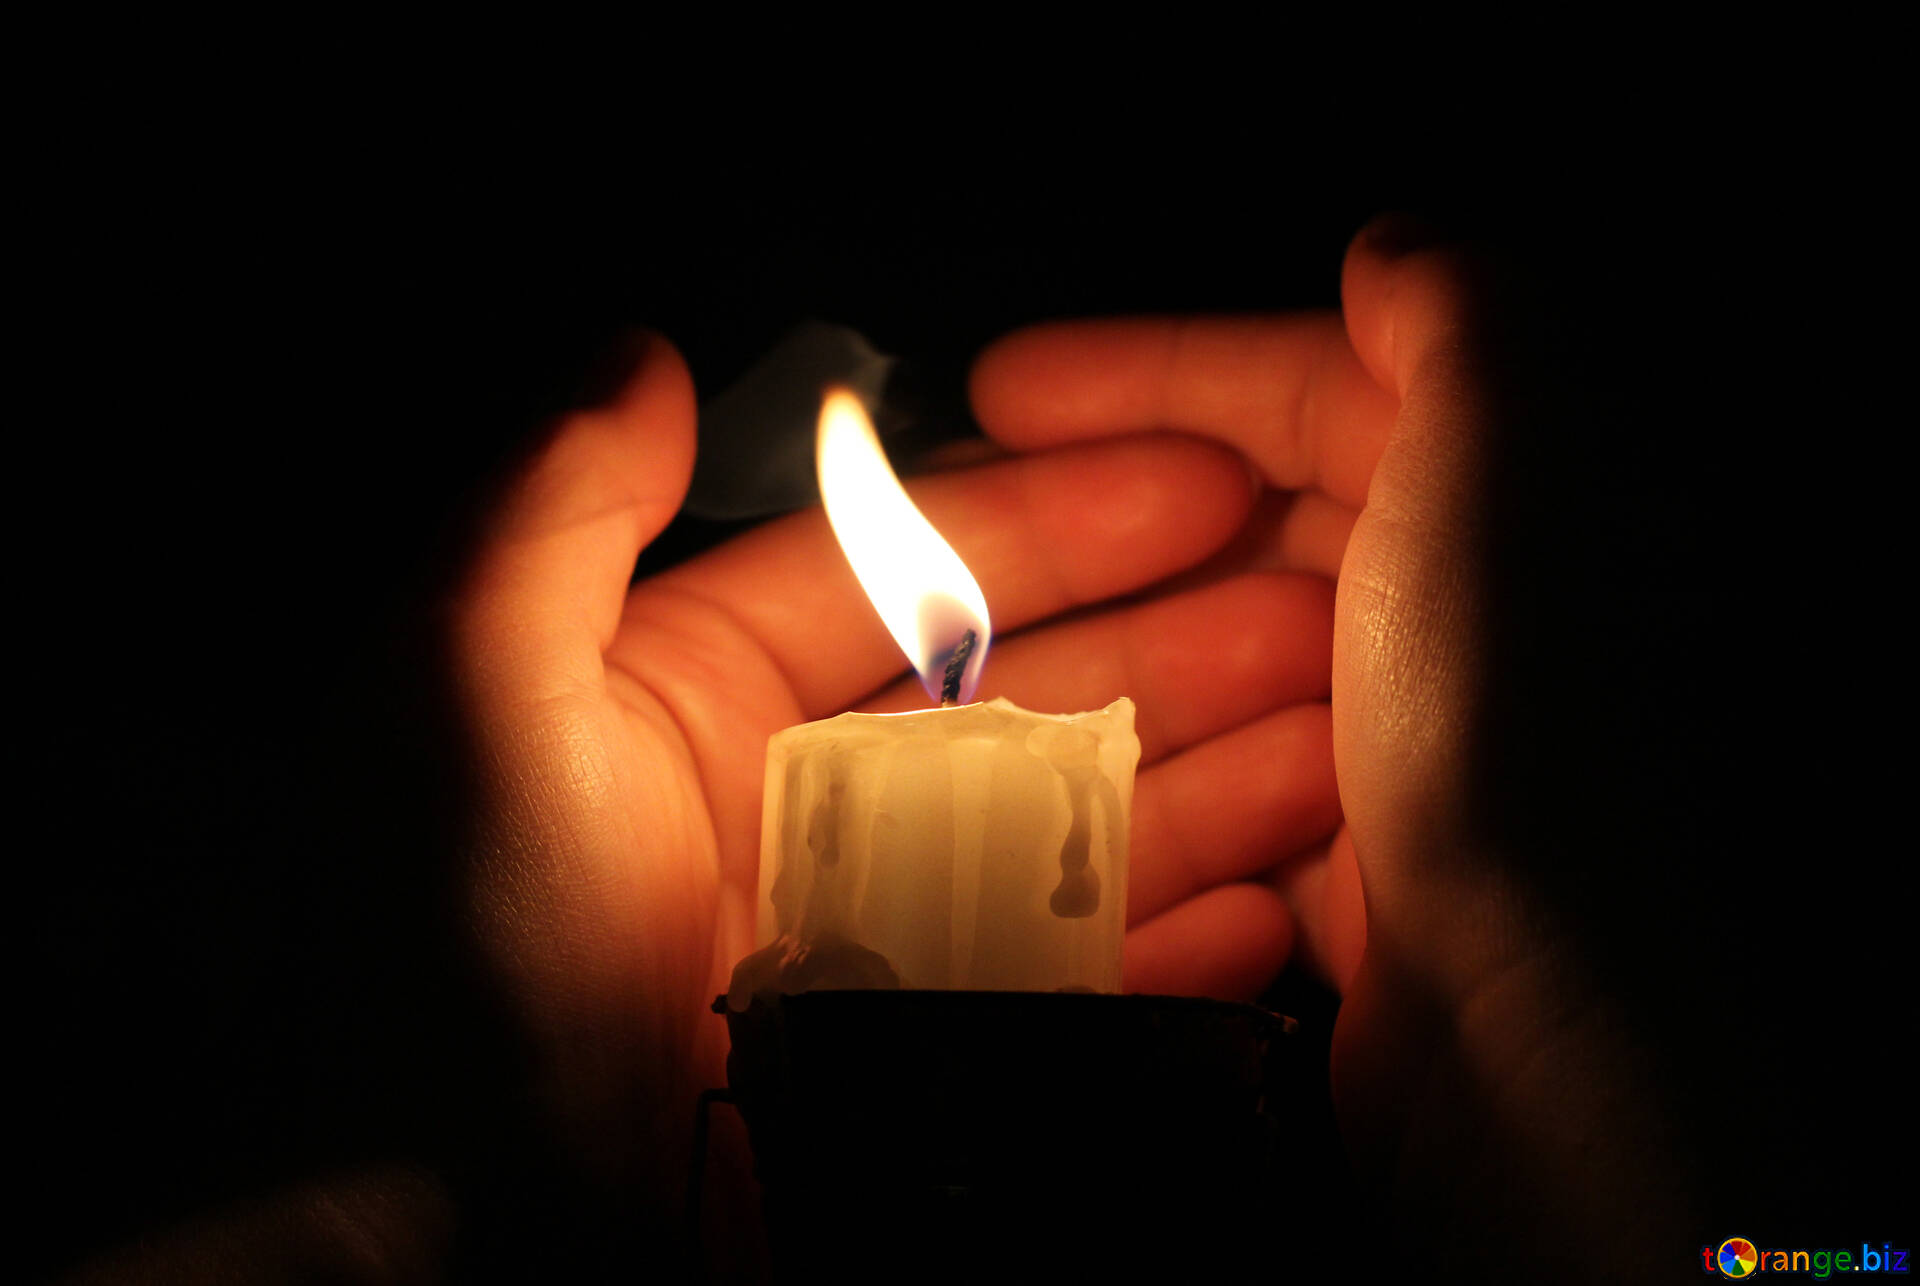 Горящая свеча гаснет в закрытой пробкой банке. Зажженная свеча. Свеча в руках. Горящие свечи. Изображение свечи.